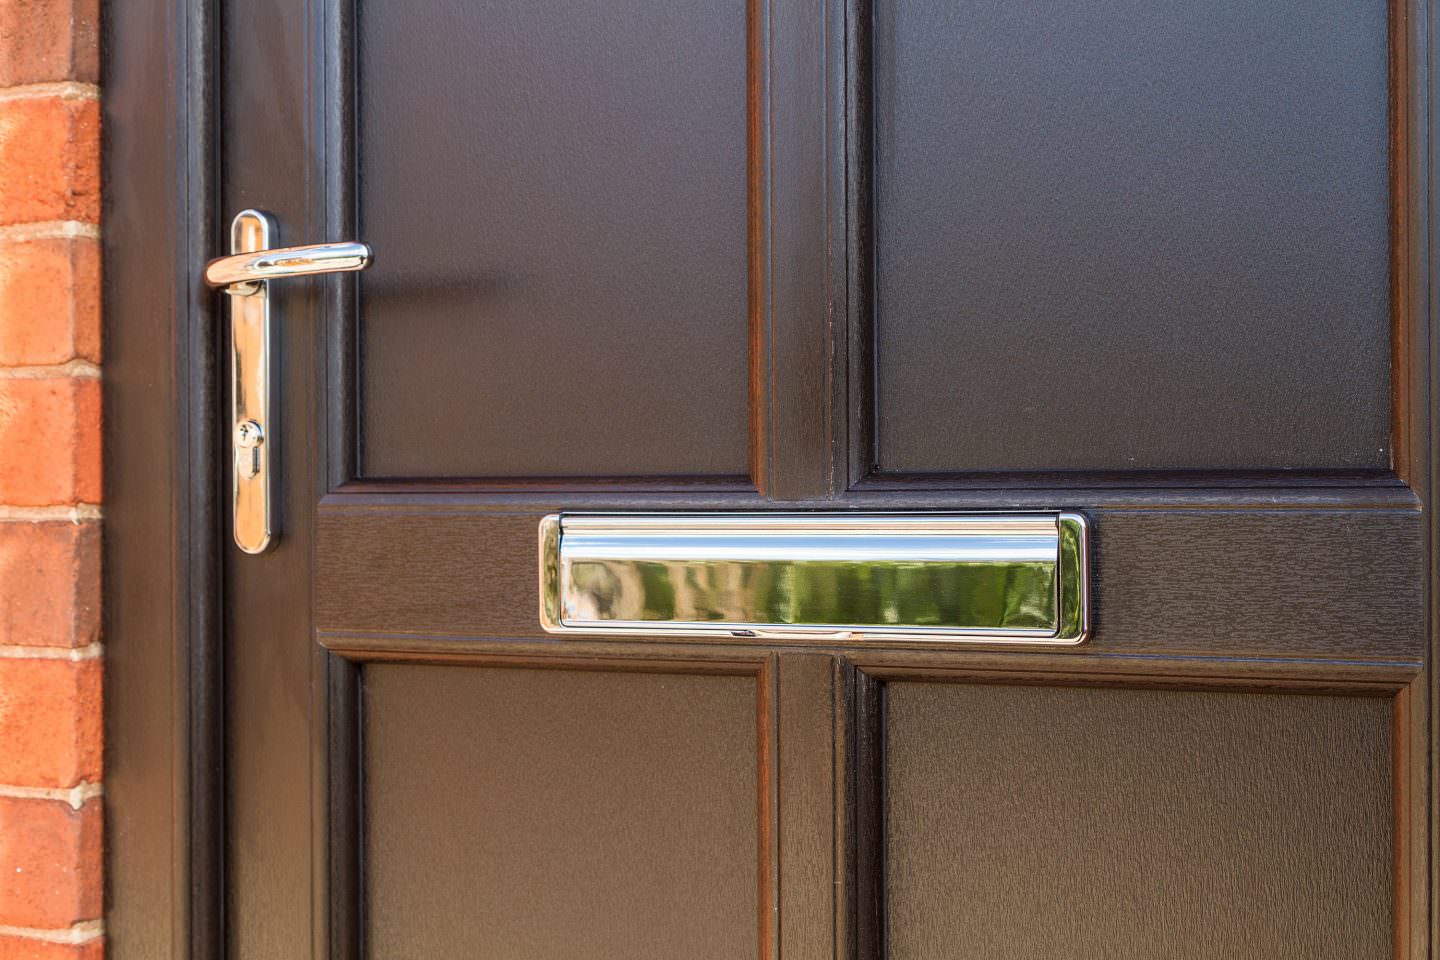 Black StyleLine Door handle and letterbox